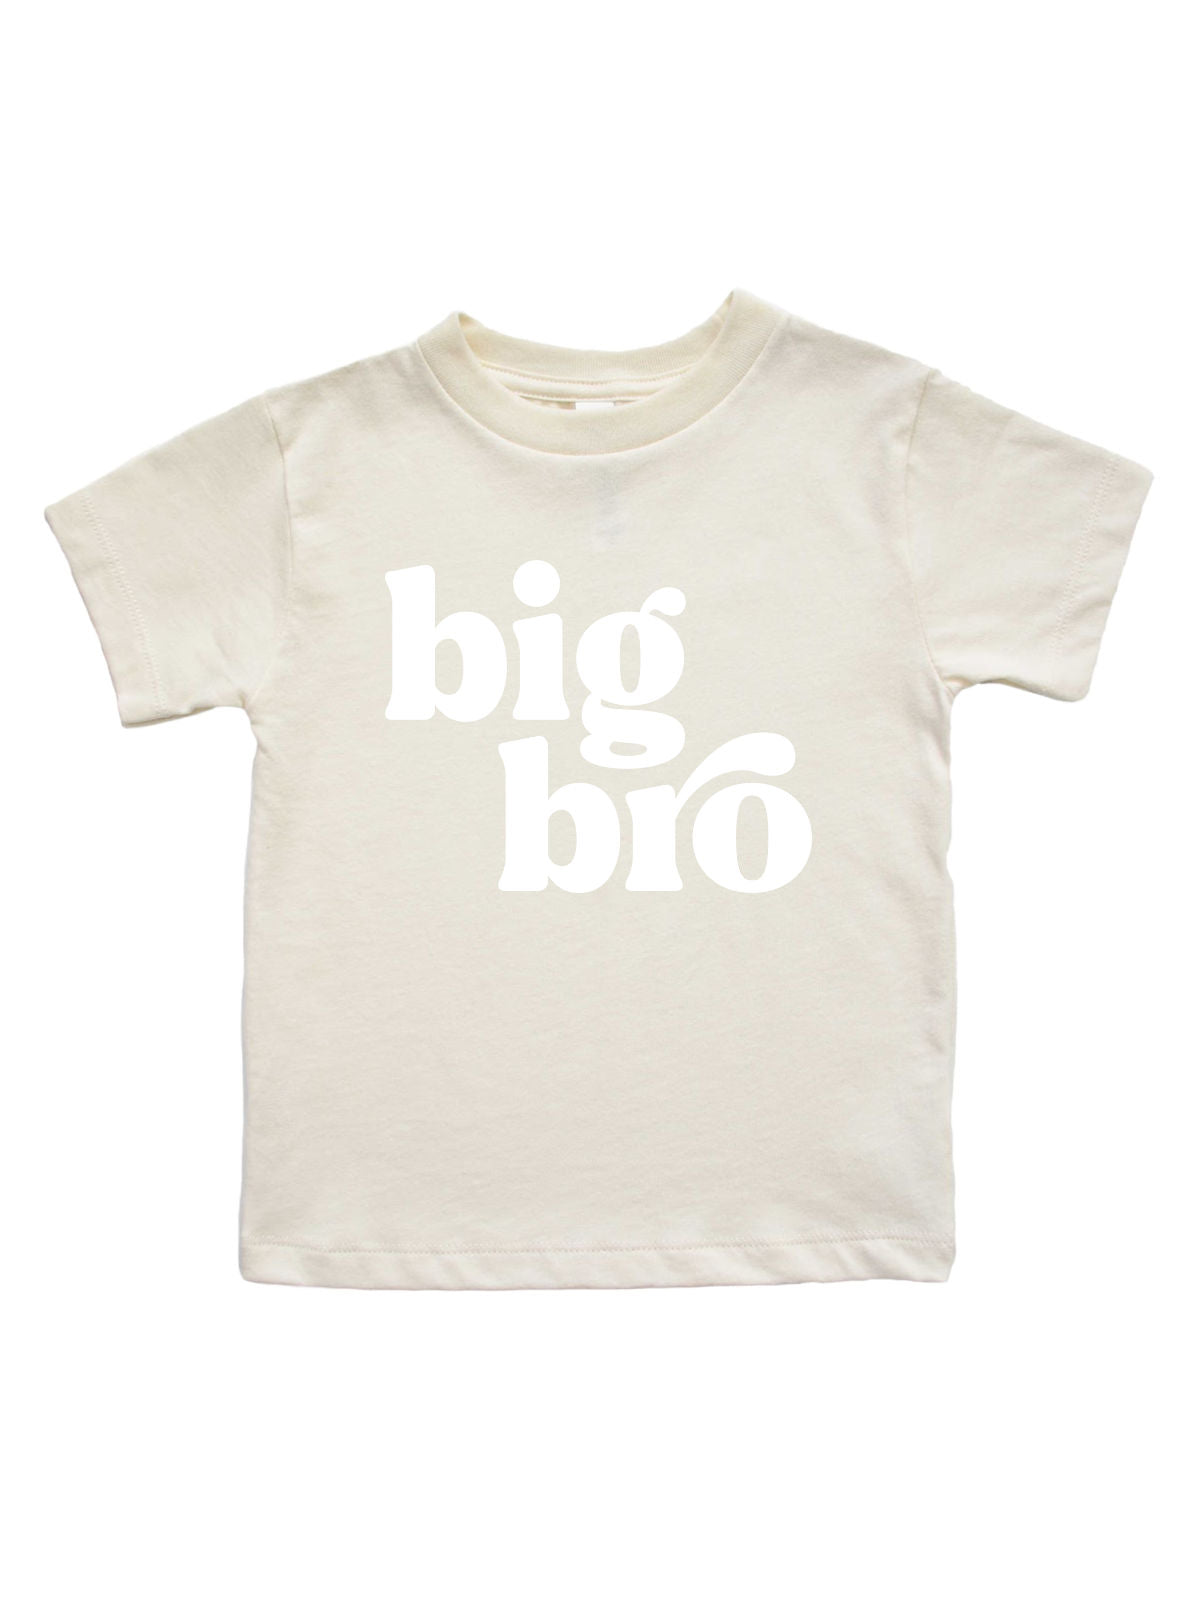 Big Bro Boys Shirt for Kids